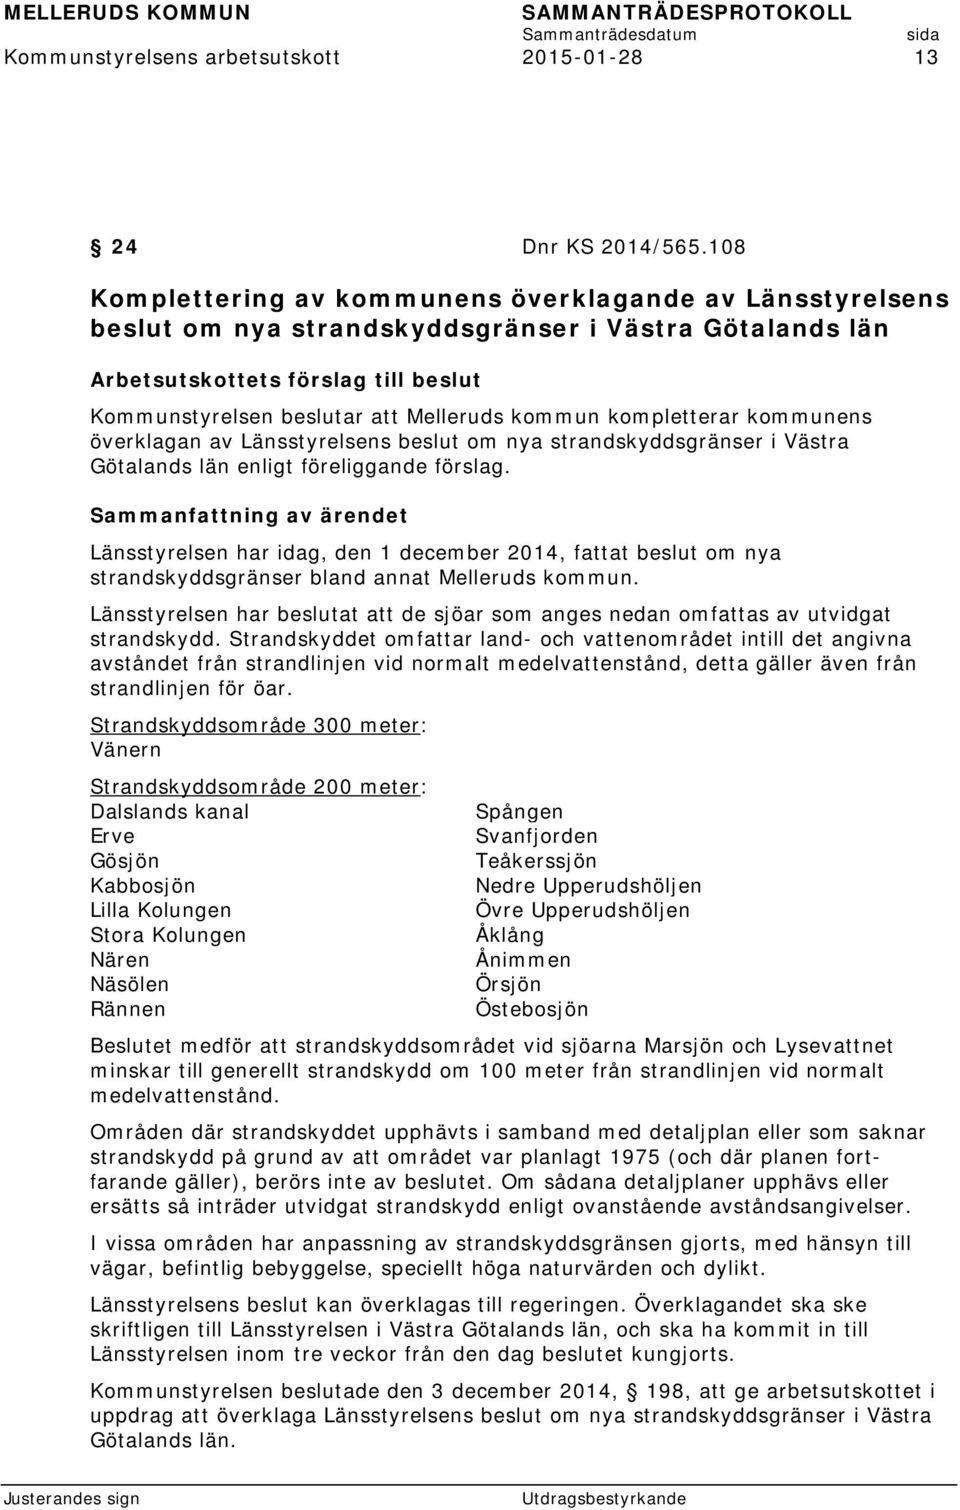 kommun kompletterar kommunens överklagan av Länsstyrelsens beslut om nya strandskyddsgränser i Västra Götalands län enligt föreliggande förslag.